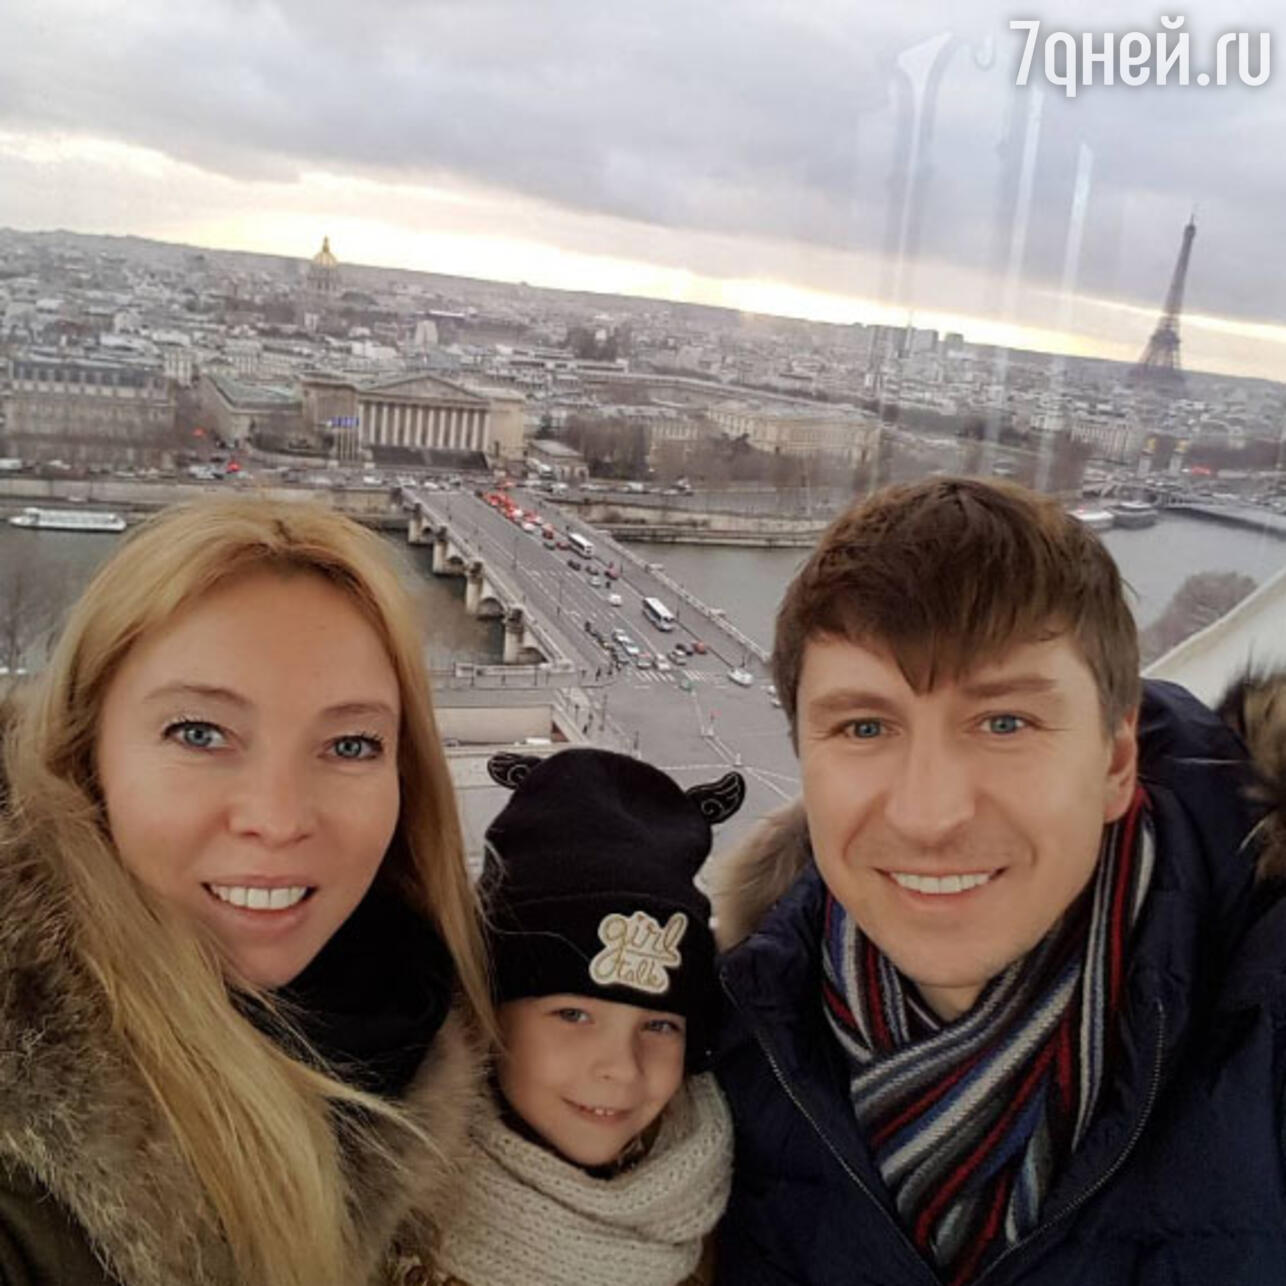 Фигурист Алексей Ягудин с женой